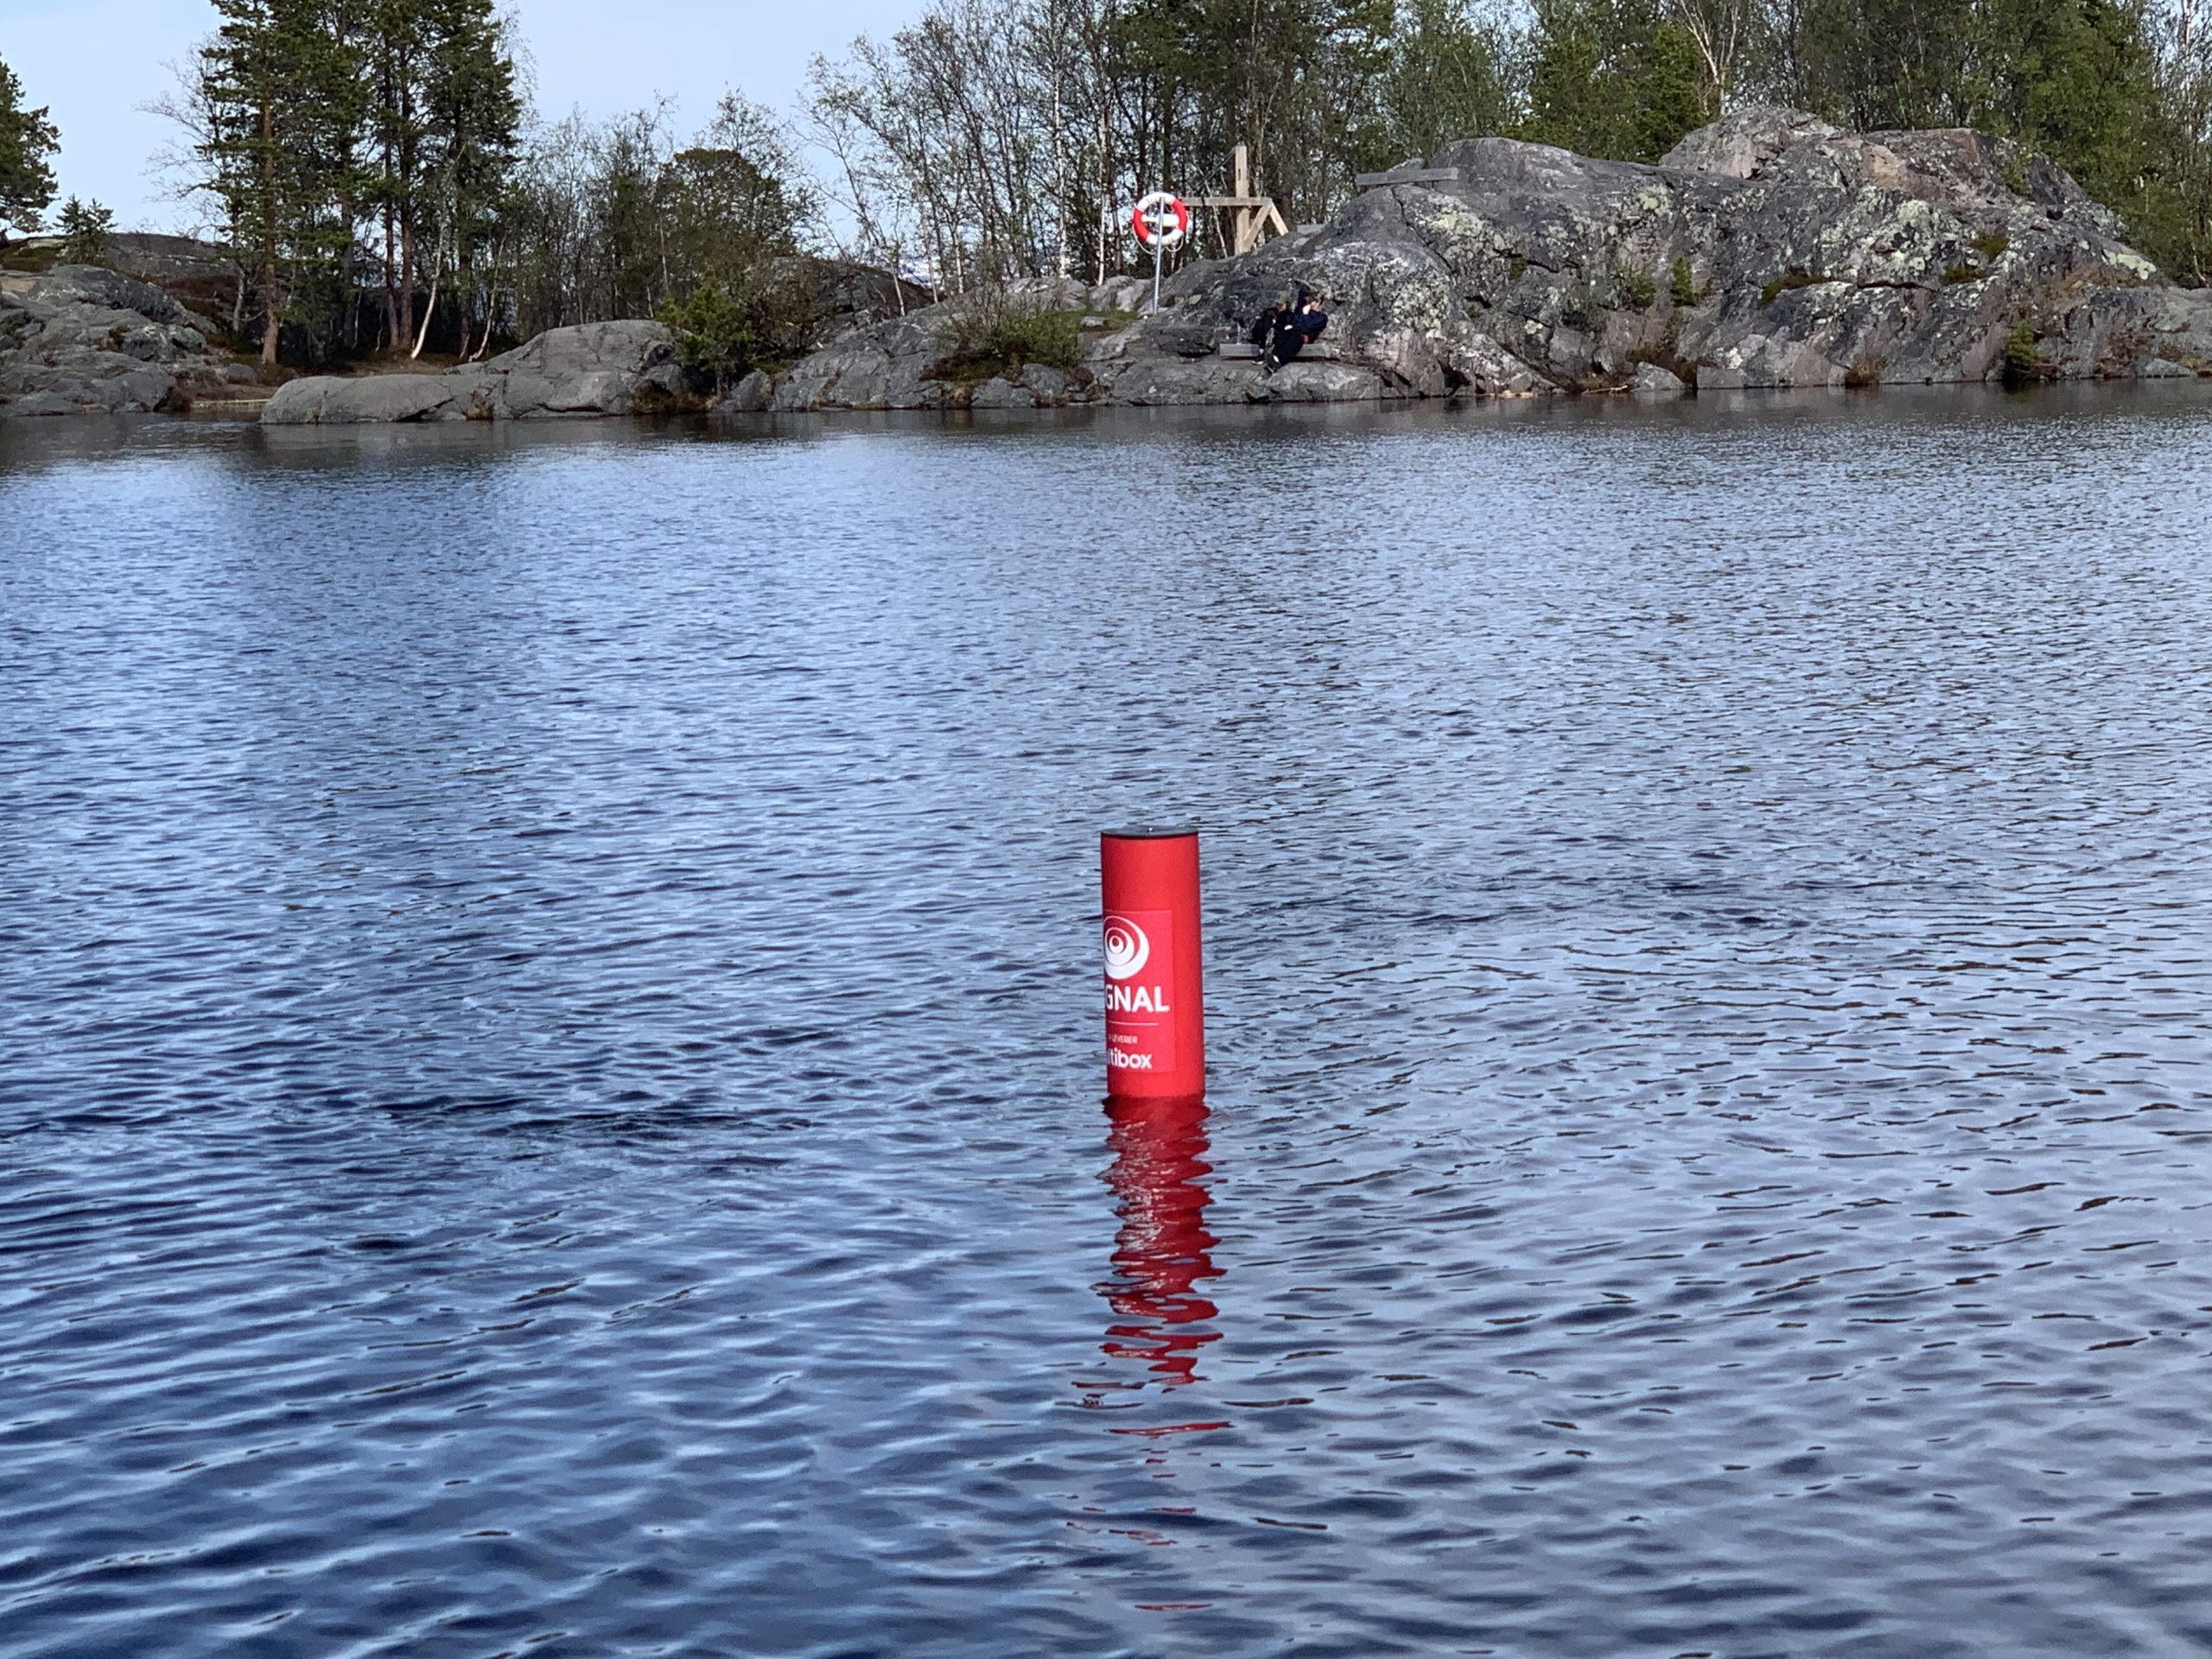 Rødt rør, også kalt Badetassen flyter over vannflaten i Finnmark